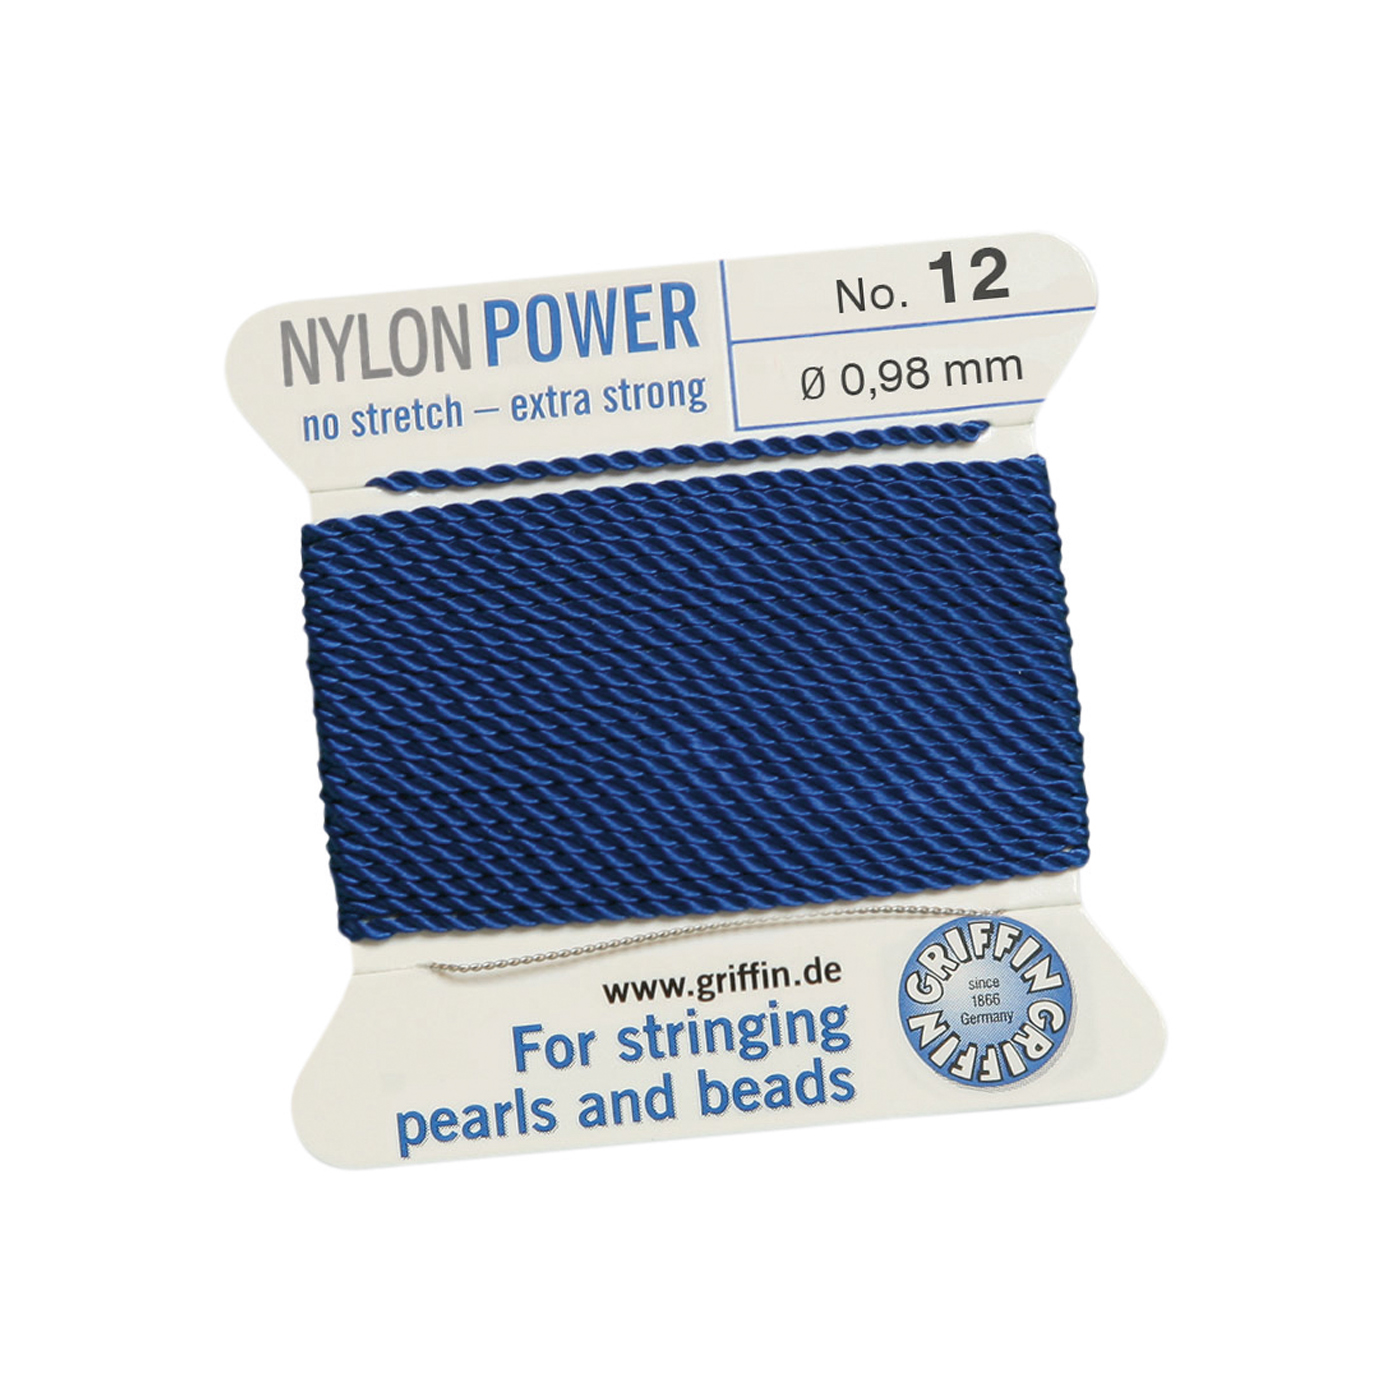 Bead Cord NylonPower, Dark Blue, No. 12 - 2 m